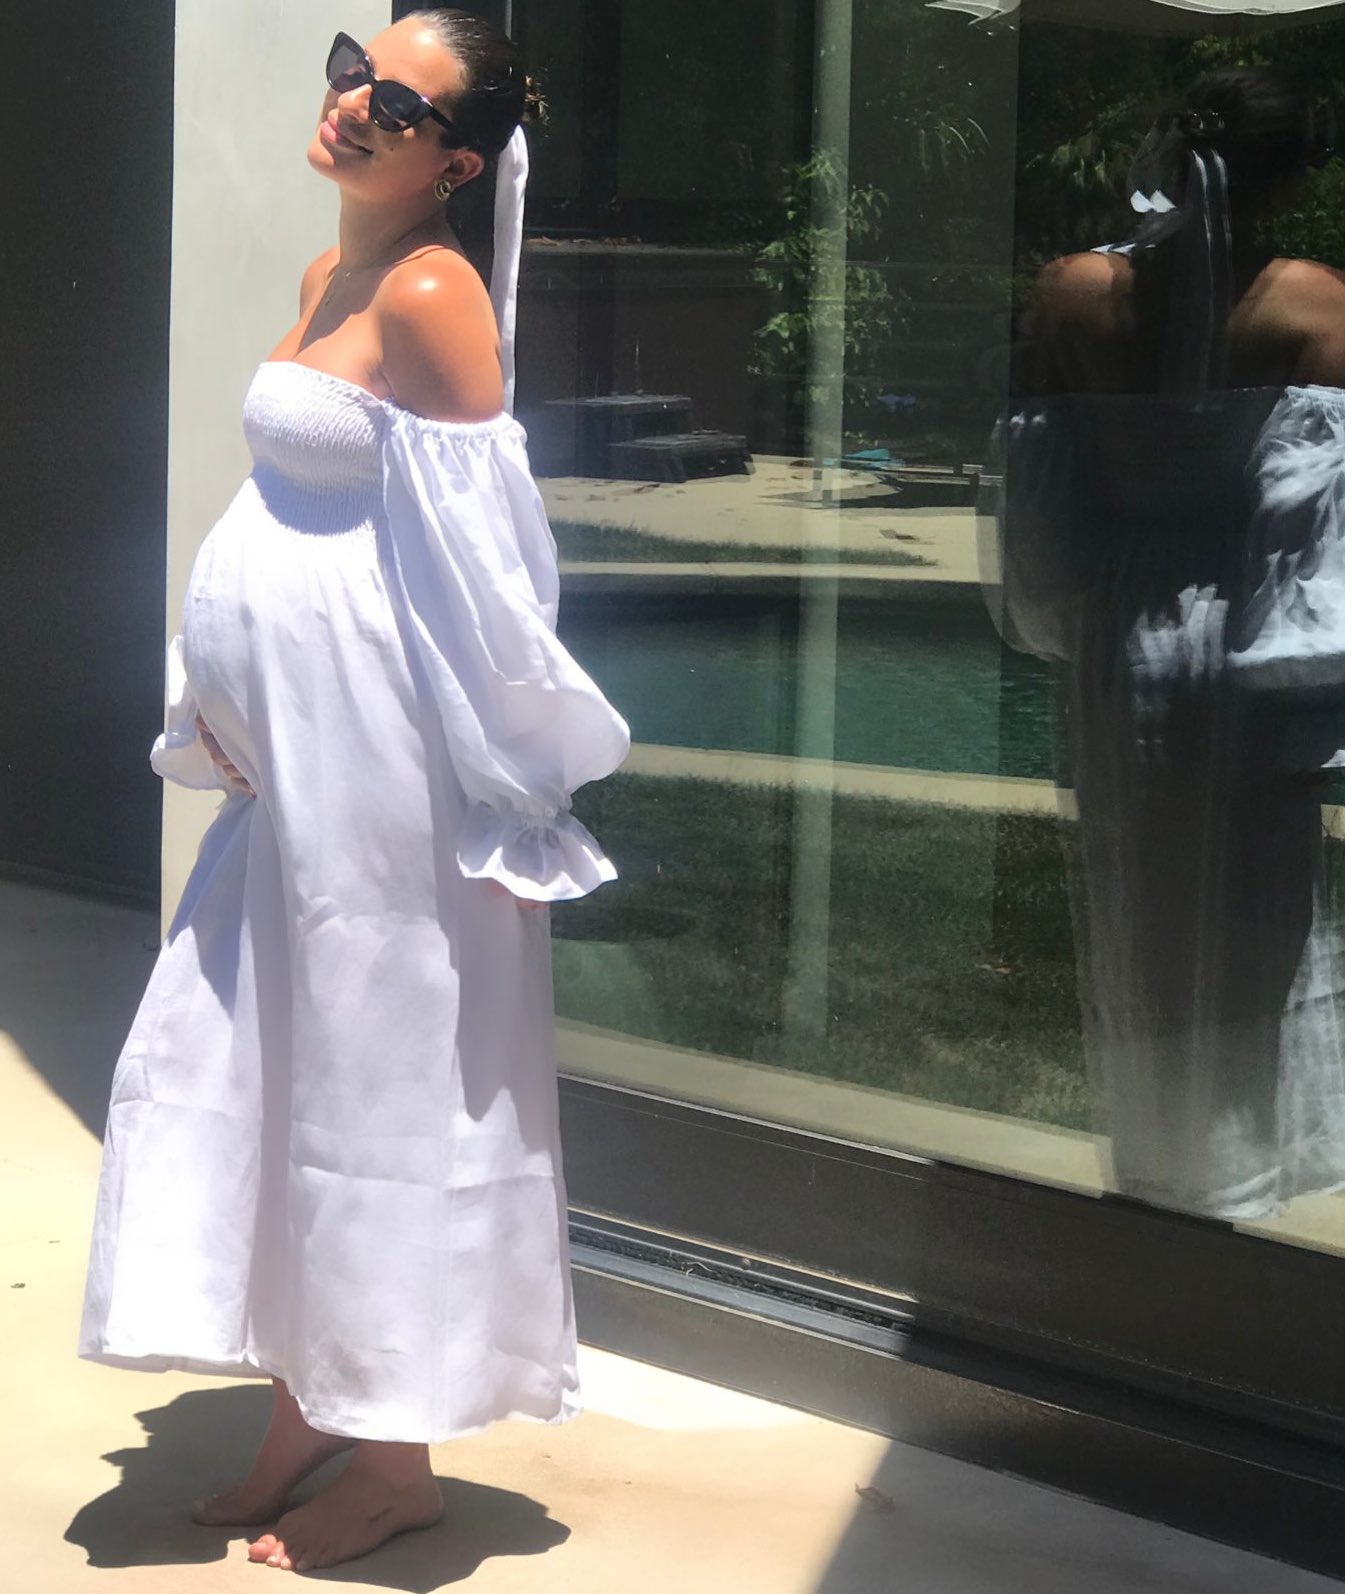 Photos n°6 : Lea Michele Takes a Trip!